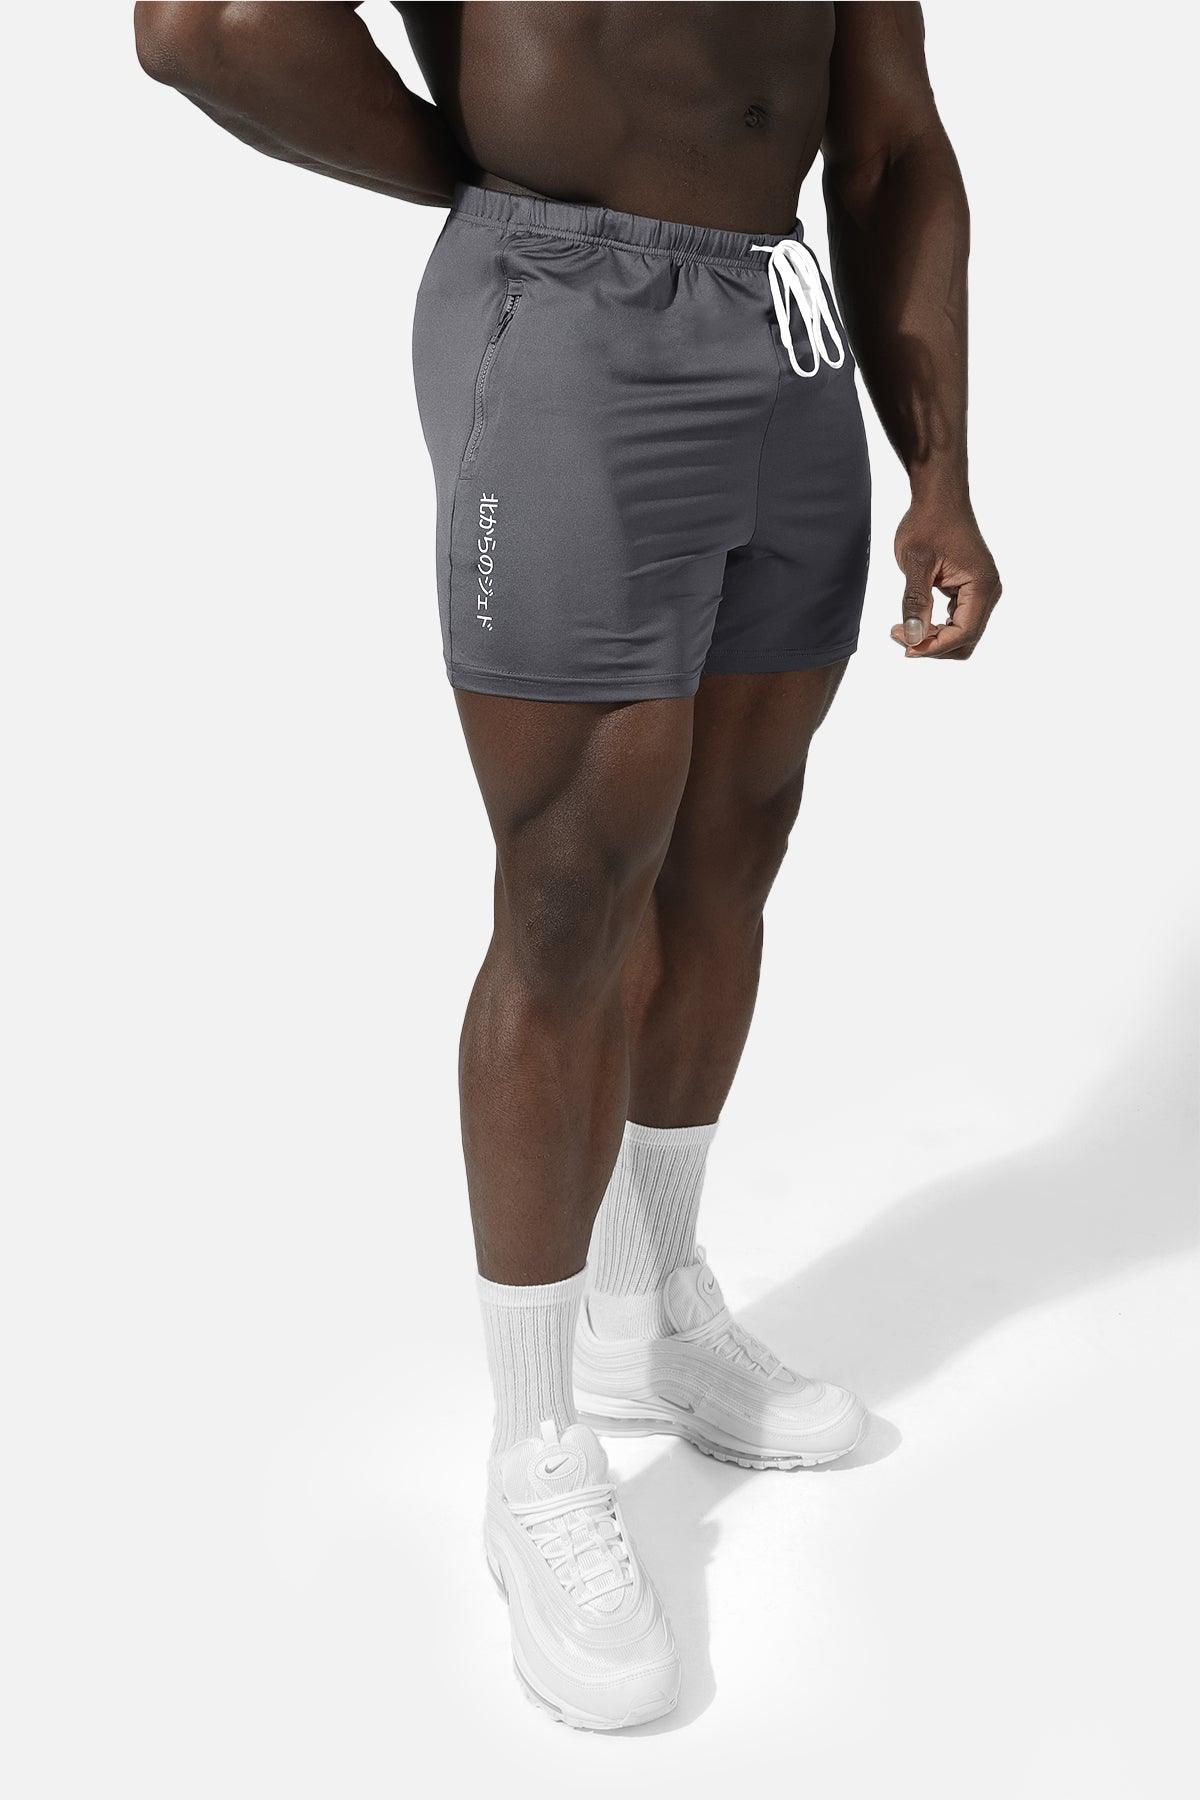 Agile Bodybuilding 4'' Shorts w Zipper Pockets - Tiger Gray - Jed North Canada